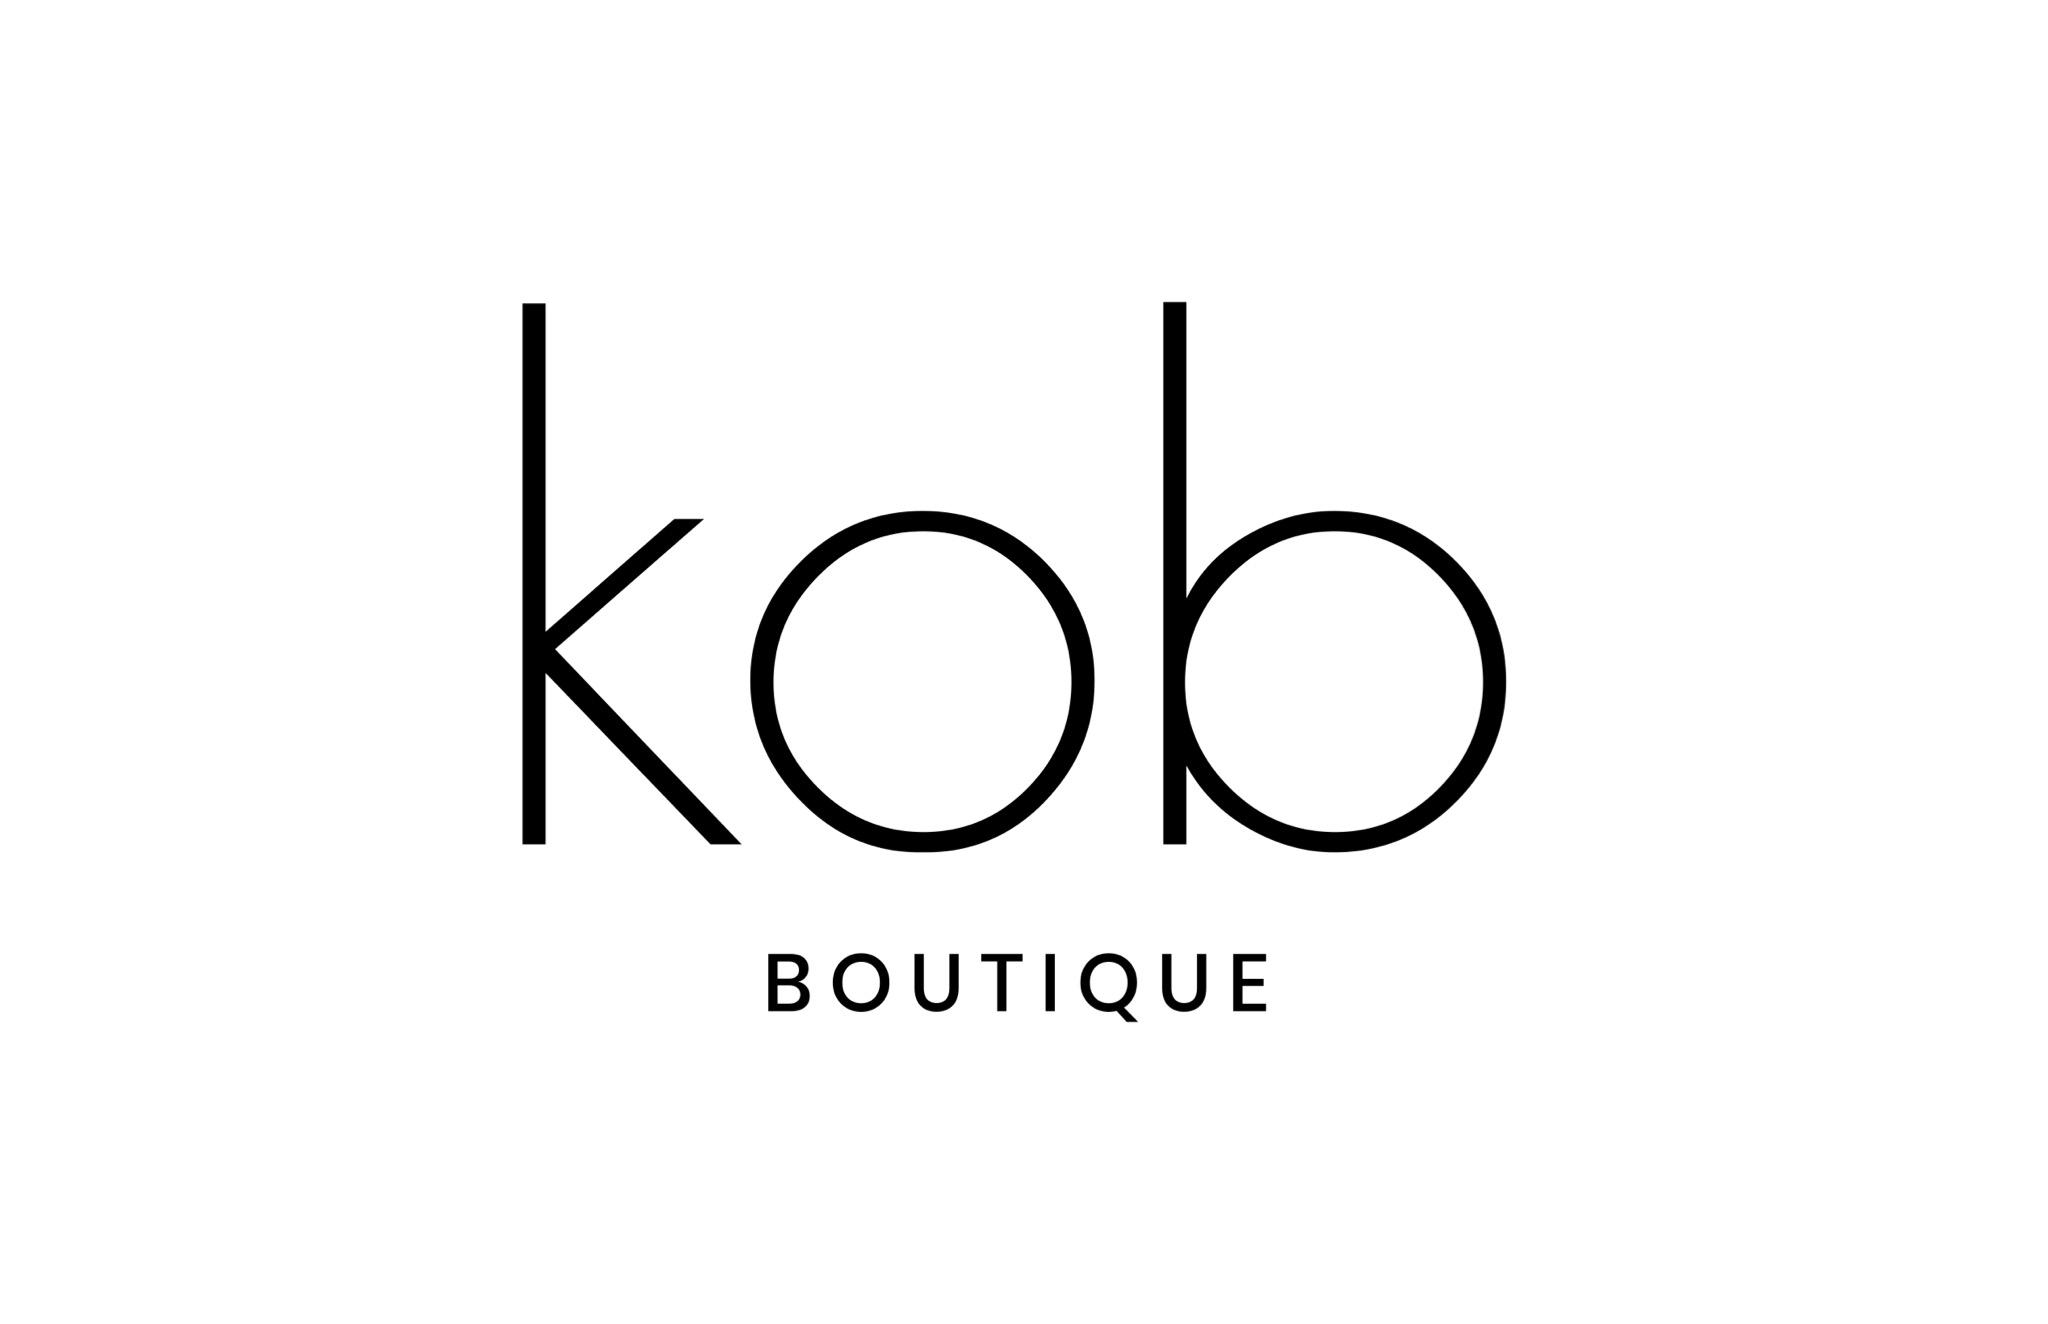 KOB Boutique